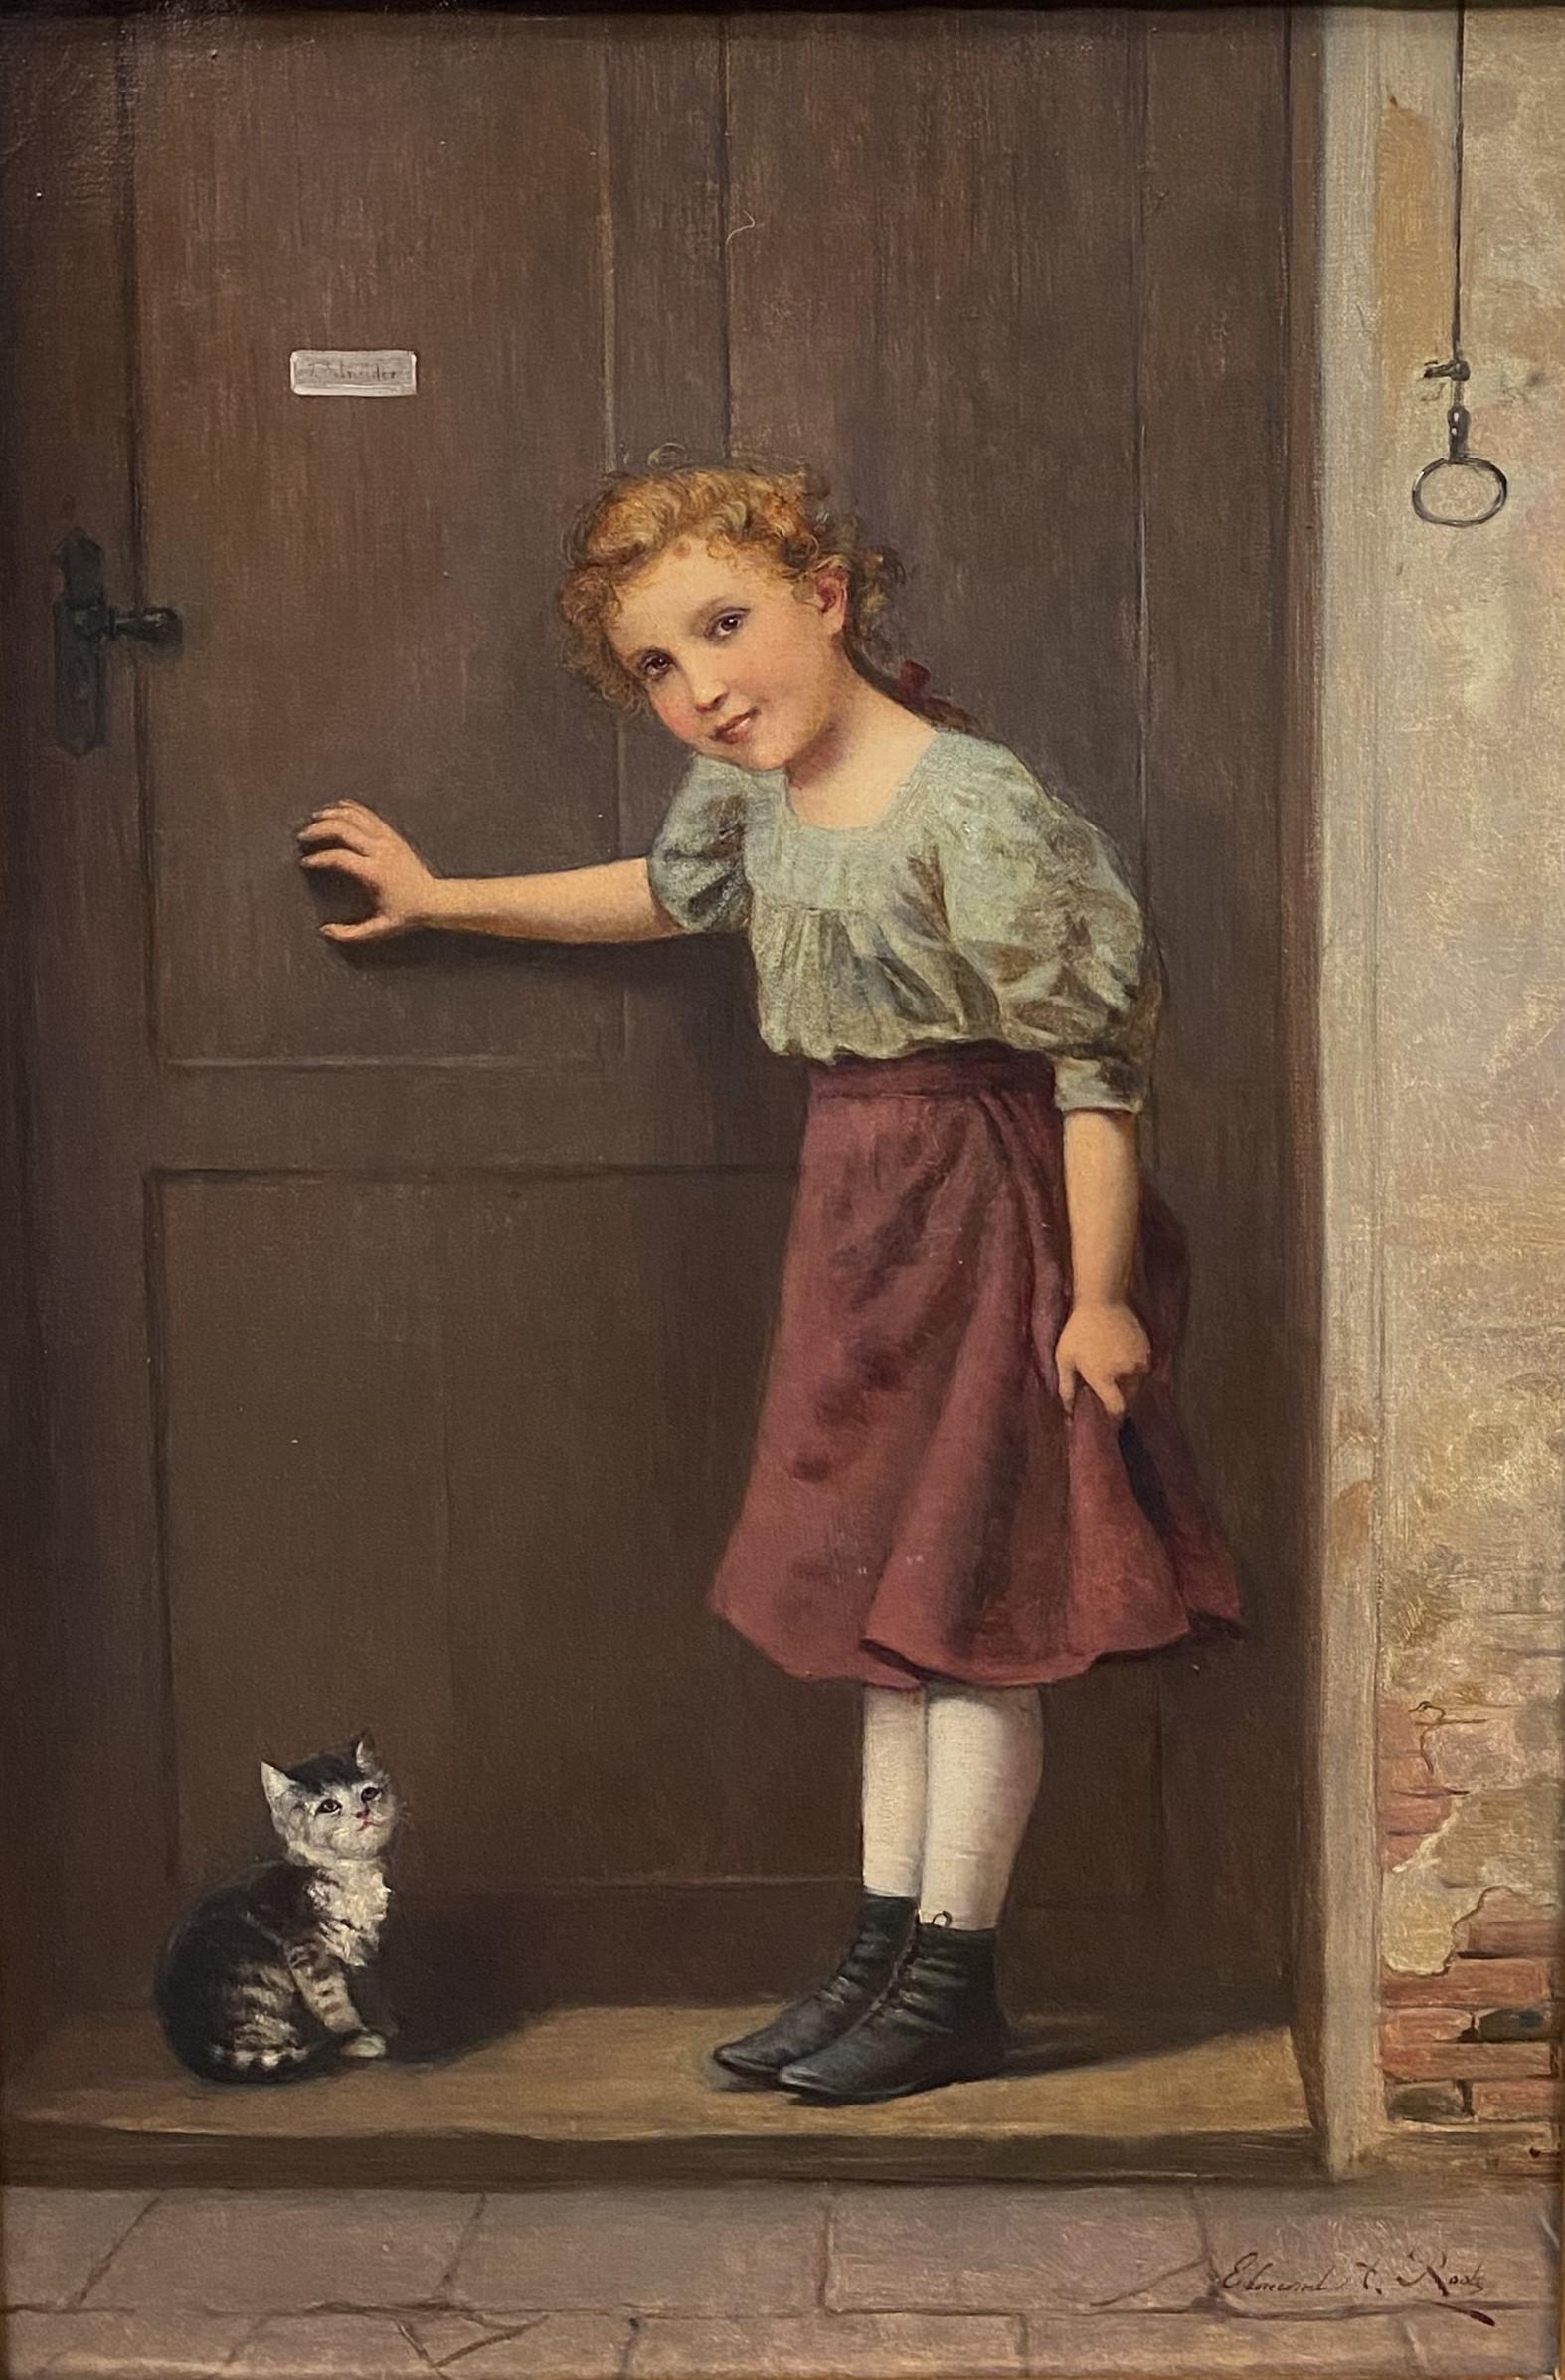 Girl & Cat in a Doorway - Painting by Edmund Adler